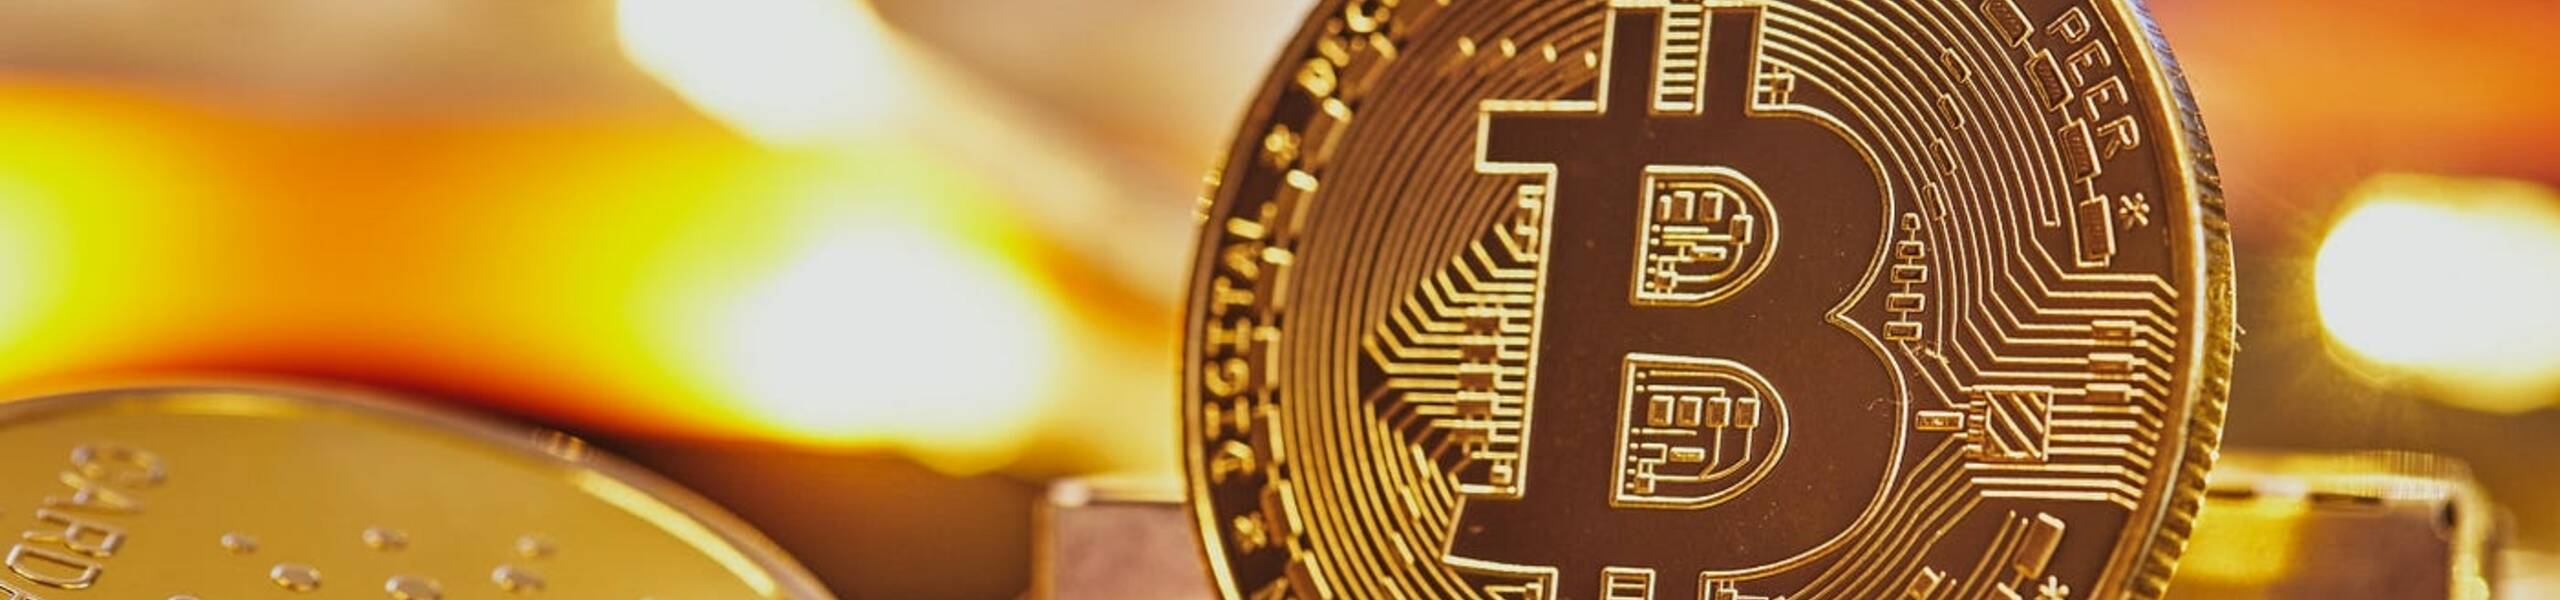 Bitcoin Mendekati Rekor Tertinggi di Atas $72K